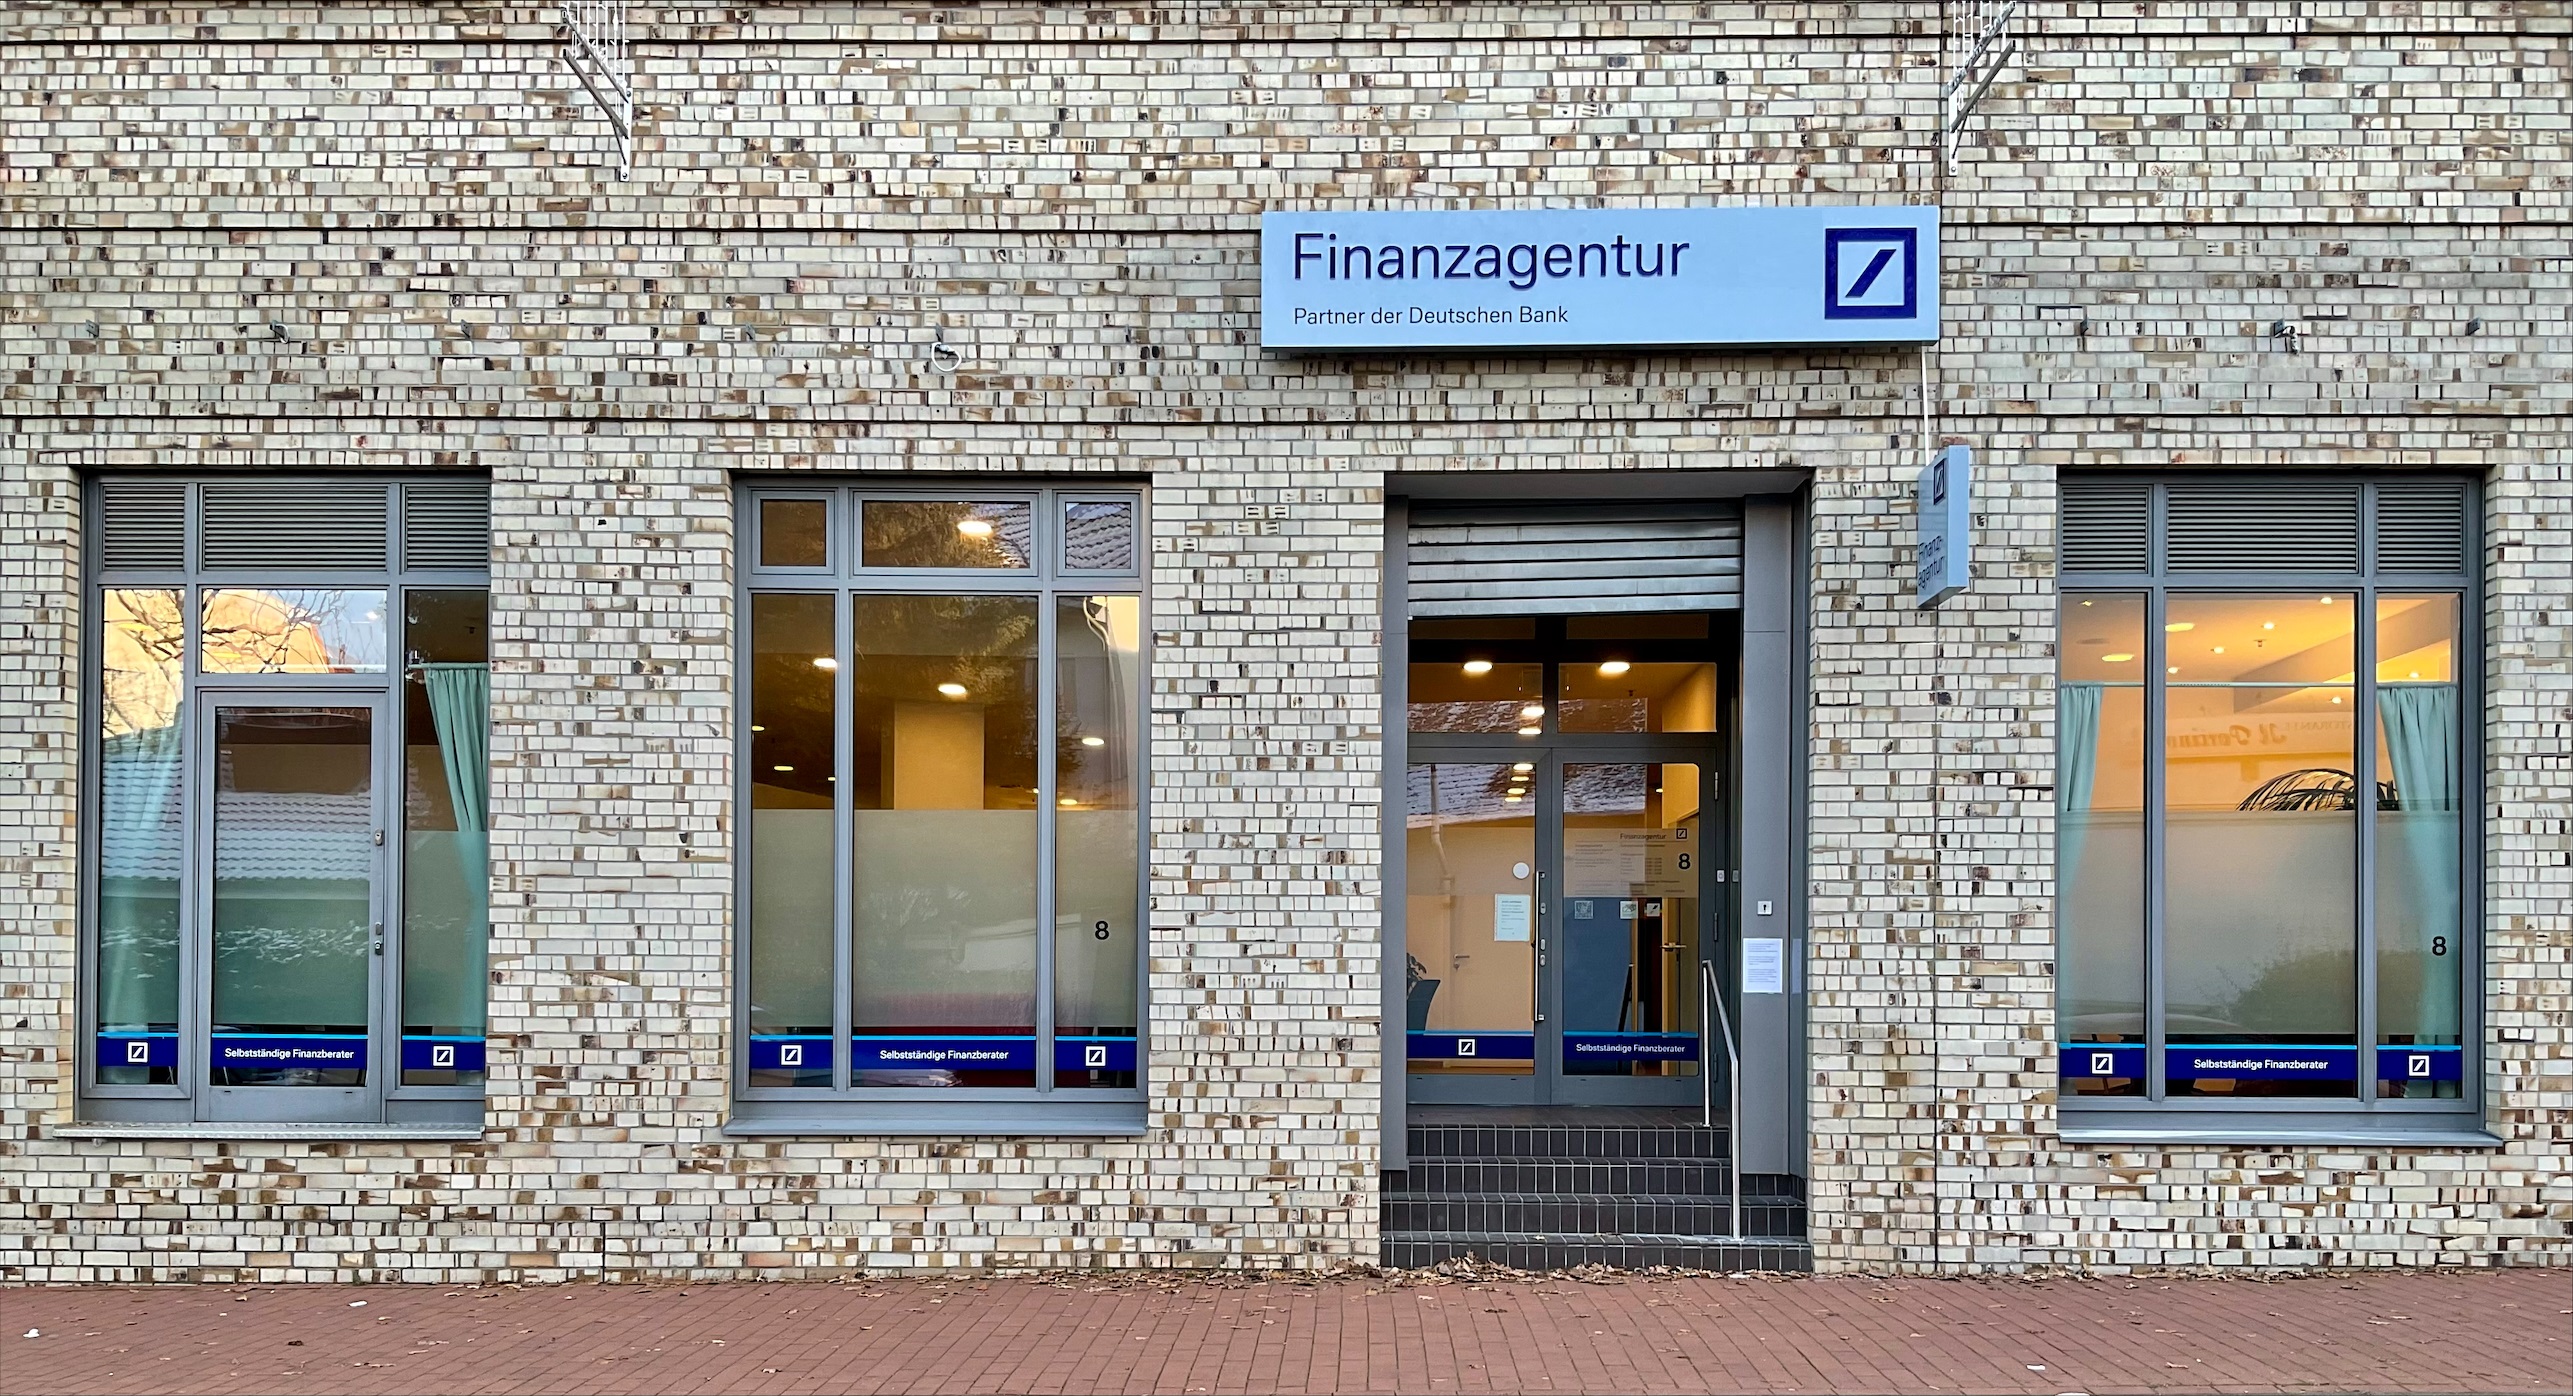 Bild 1 Finanzagentur - Partner der Deutschen Bank in Hamburg